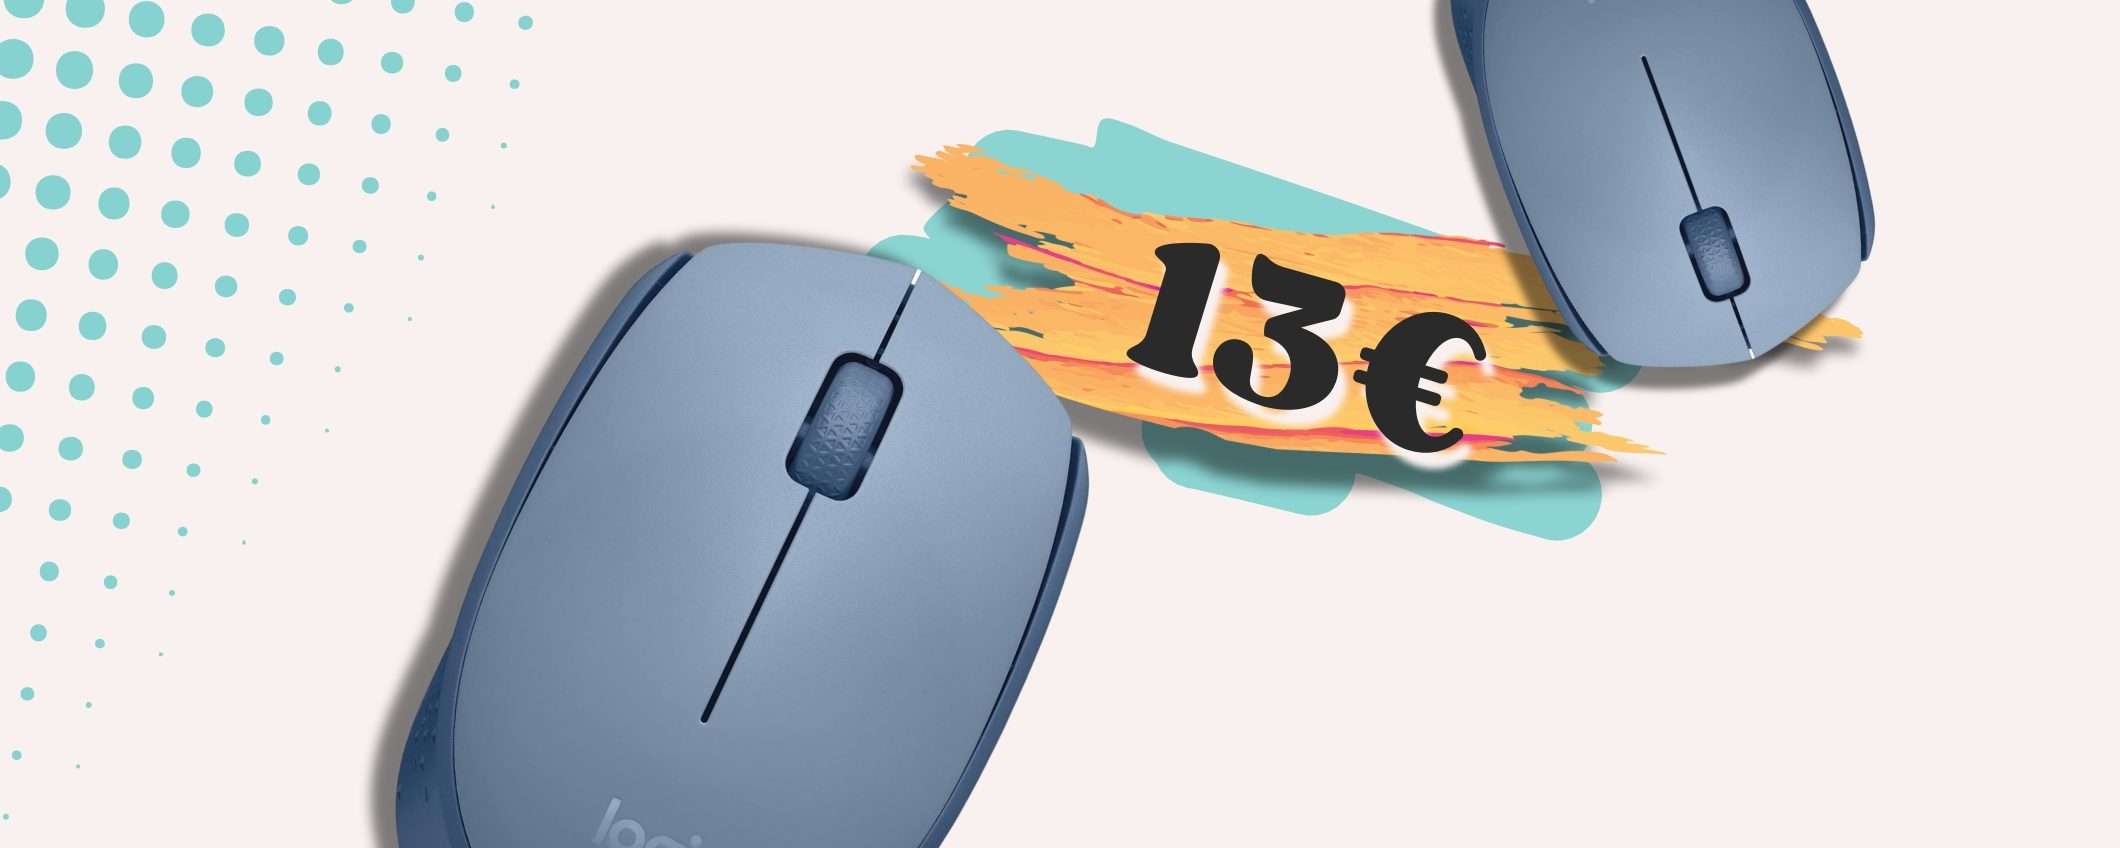 Logitech M171 colorato e WIRELESS per un mouse da 12 mesi COMODO